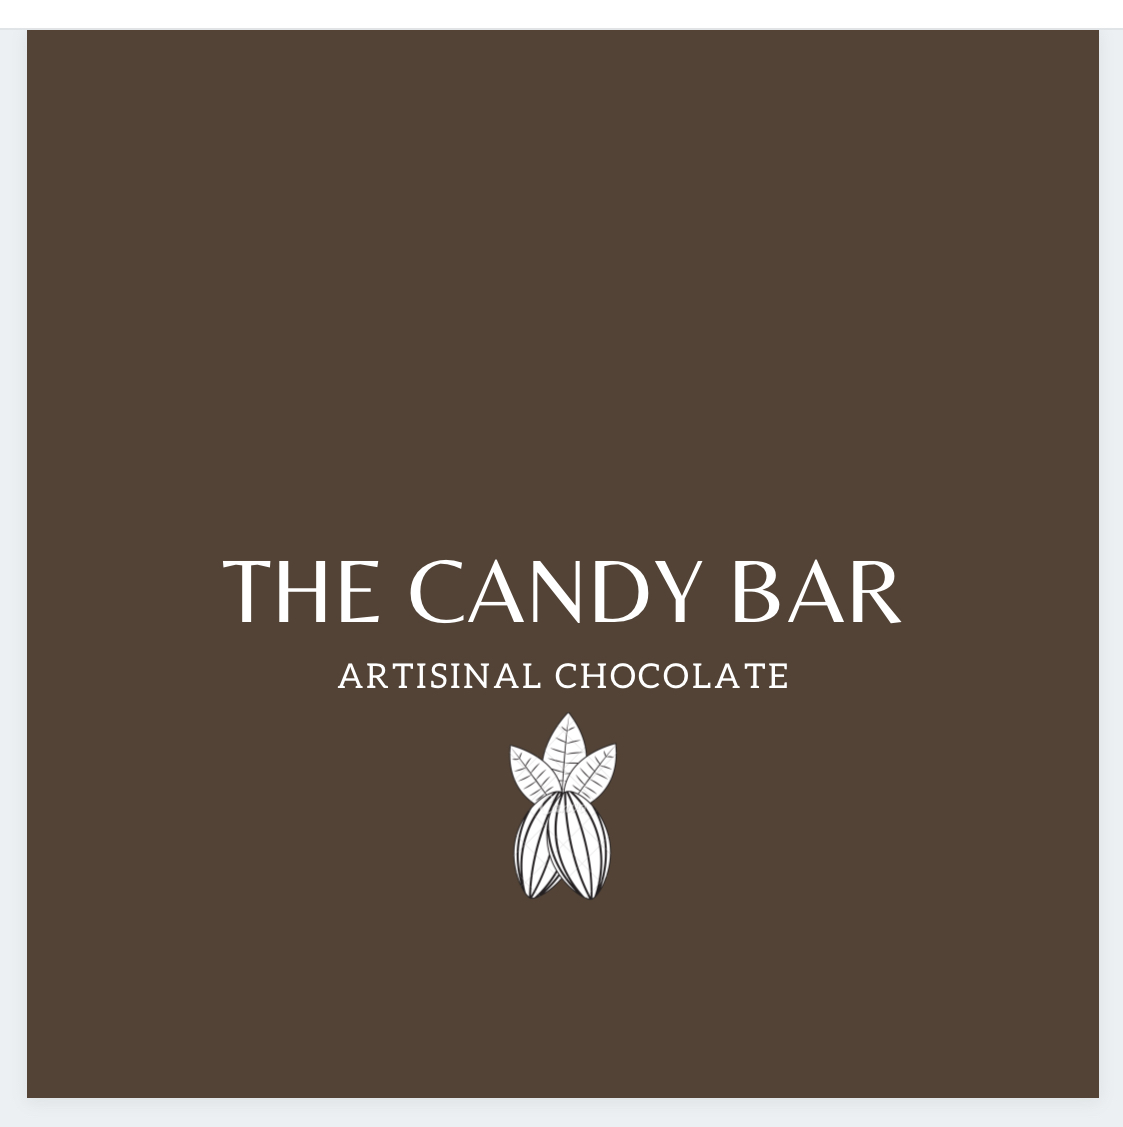 The Candy Bar logo